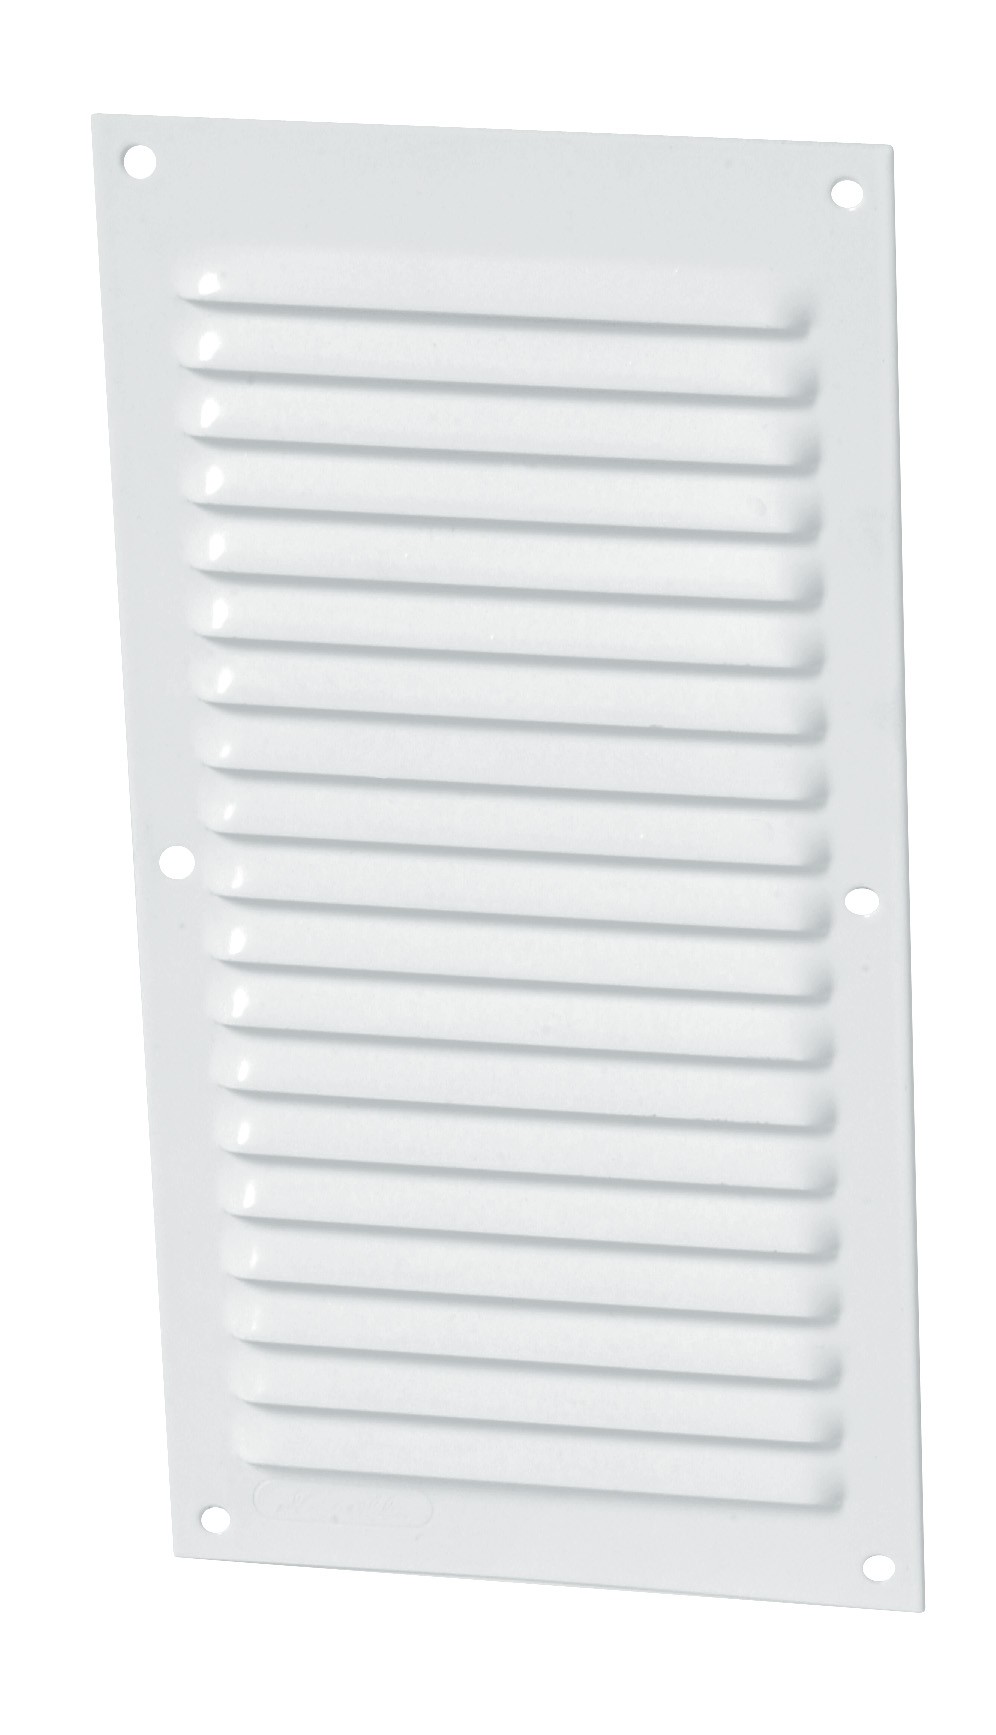 Alluminio laccato bianco con zanzariera: Rettangolare verticale 30x15